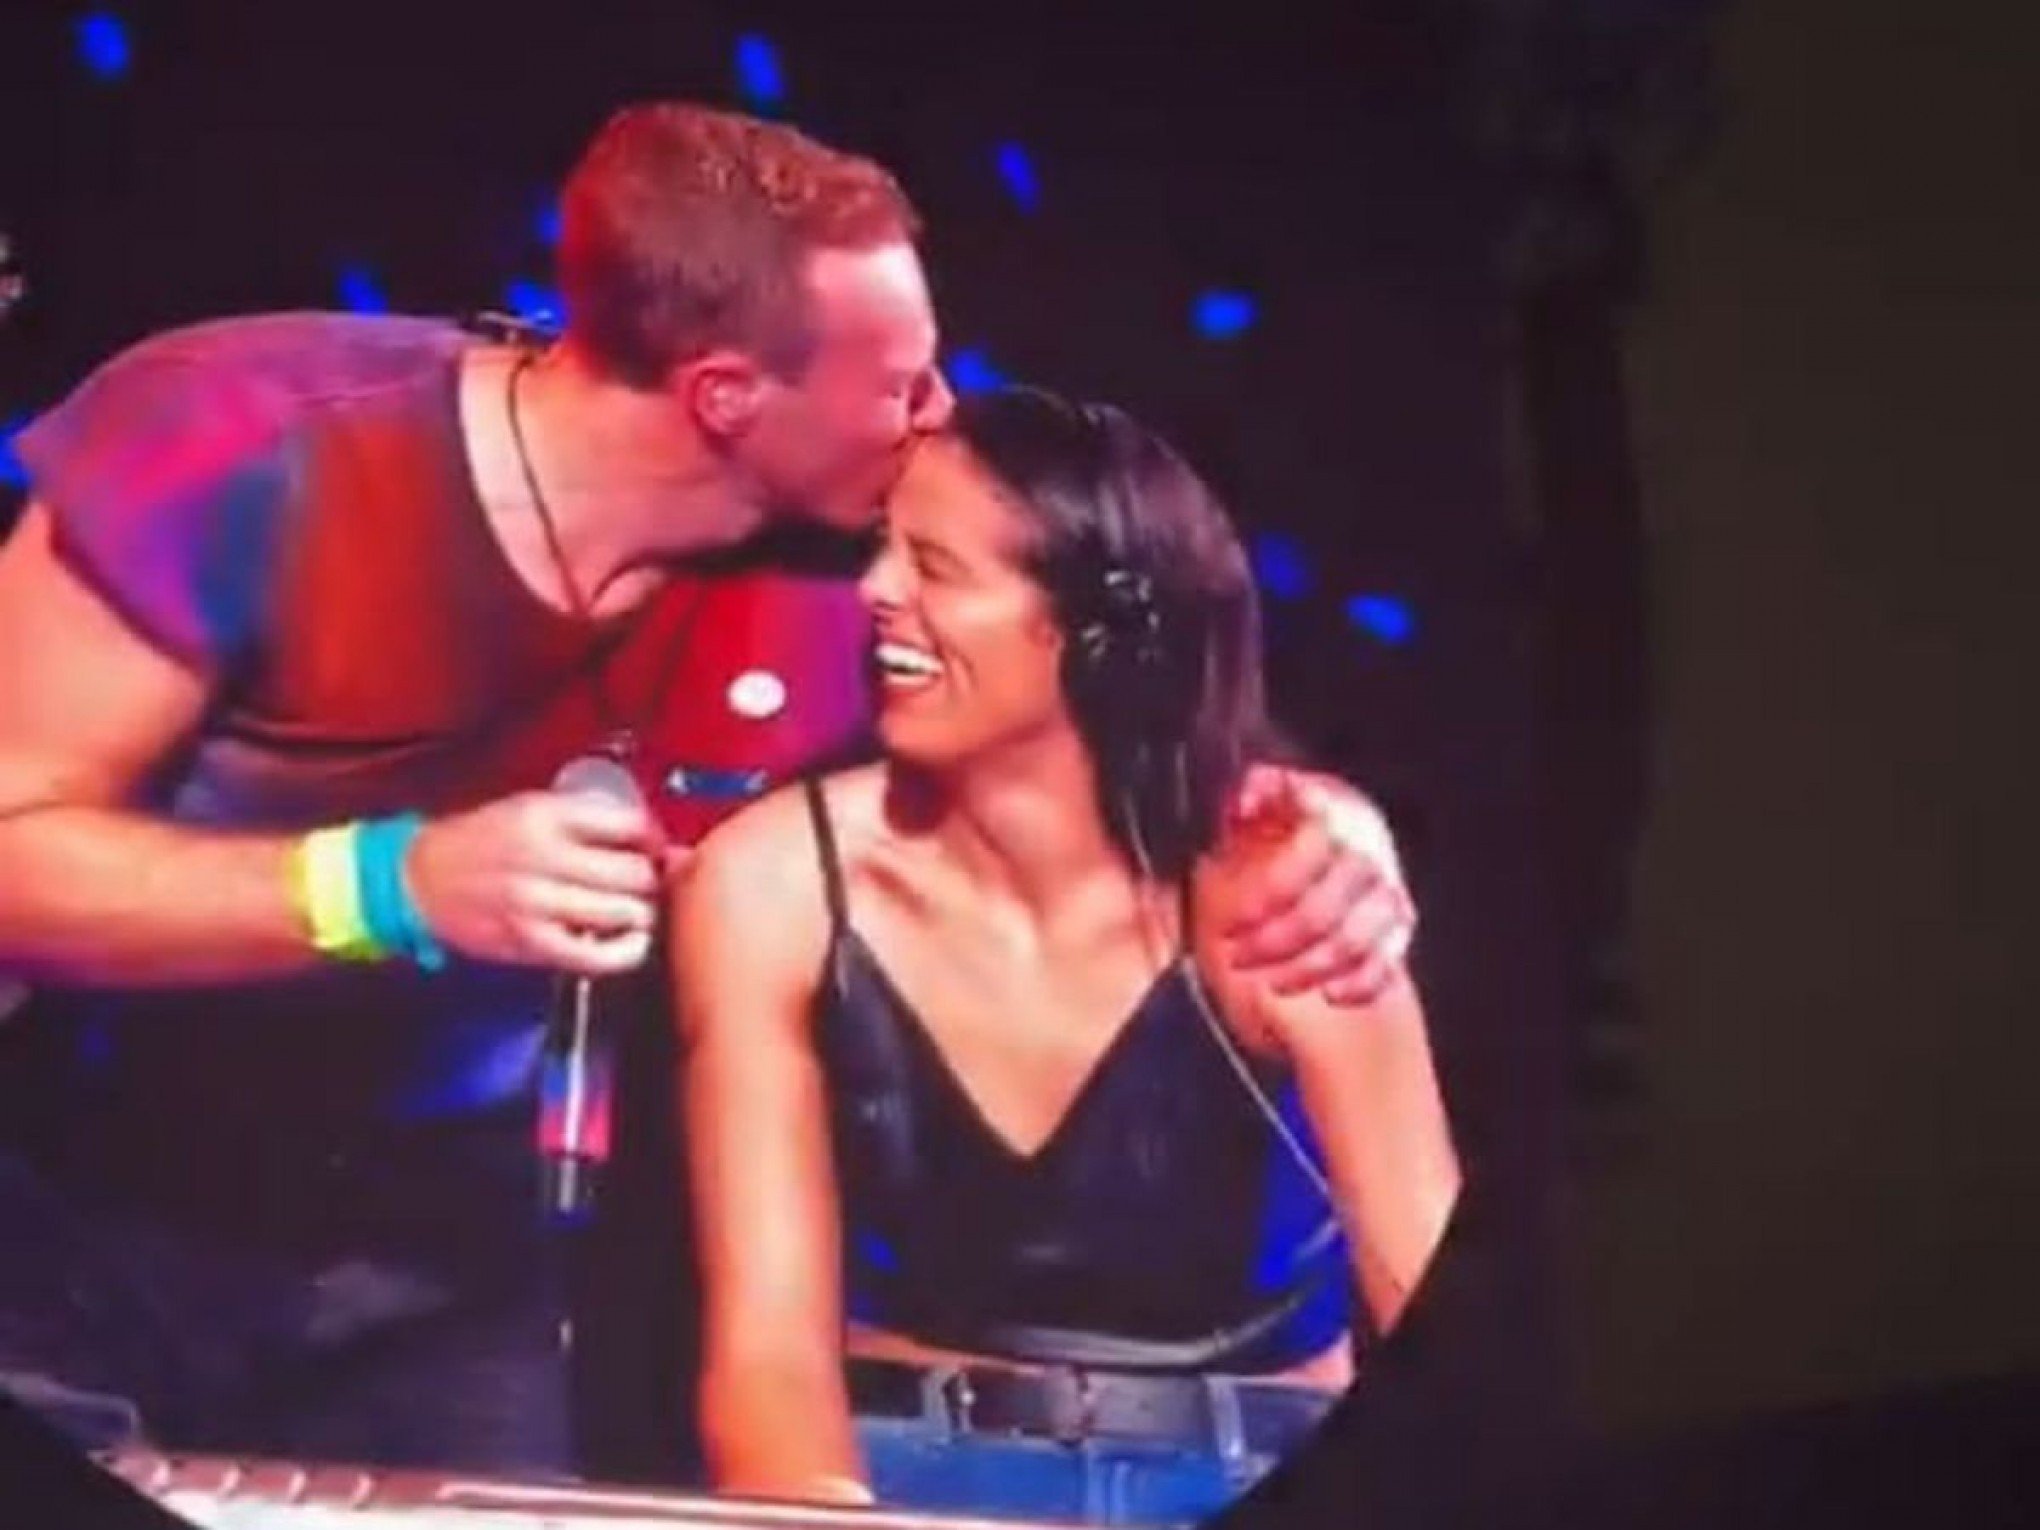 Gaúcha sobe ao palco e toca com Chris Martin durante show do Coldplay em Curitiba: "A ficha ainda não caiu"